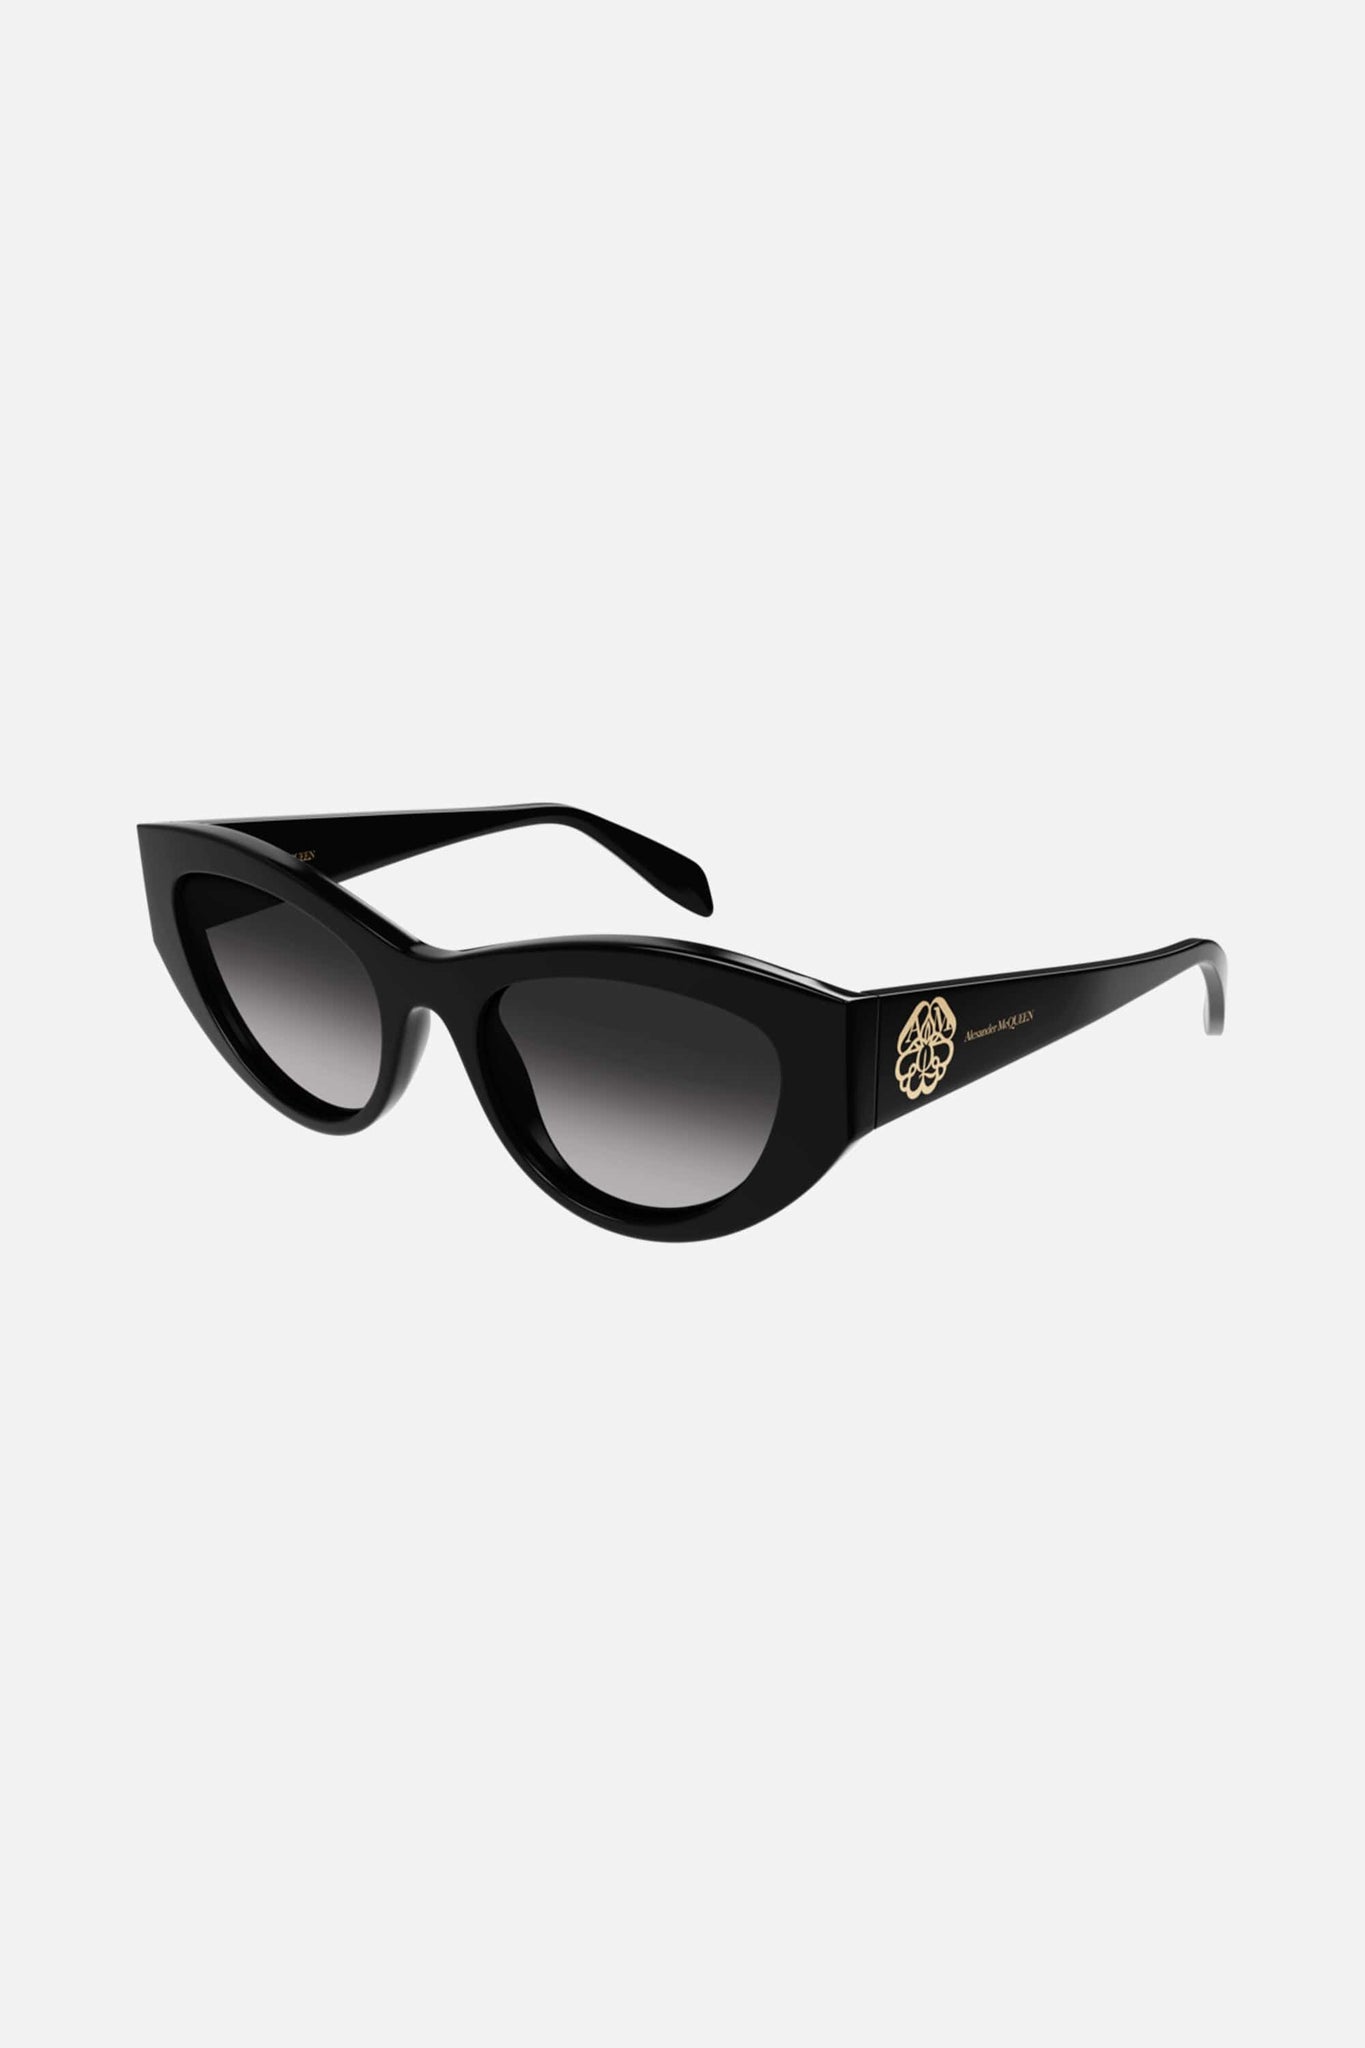 McQueen black cat sunglasses